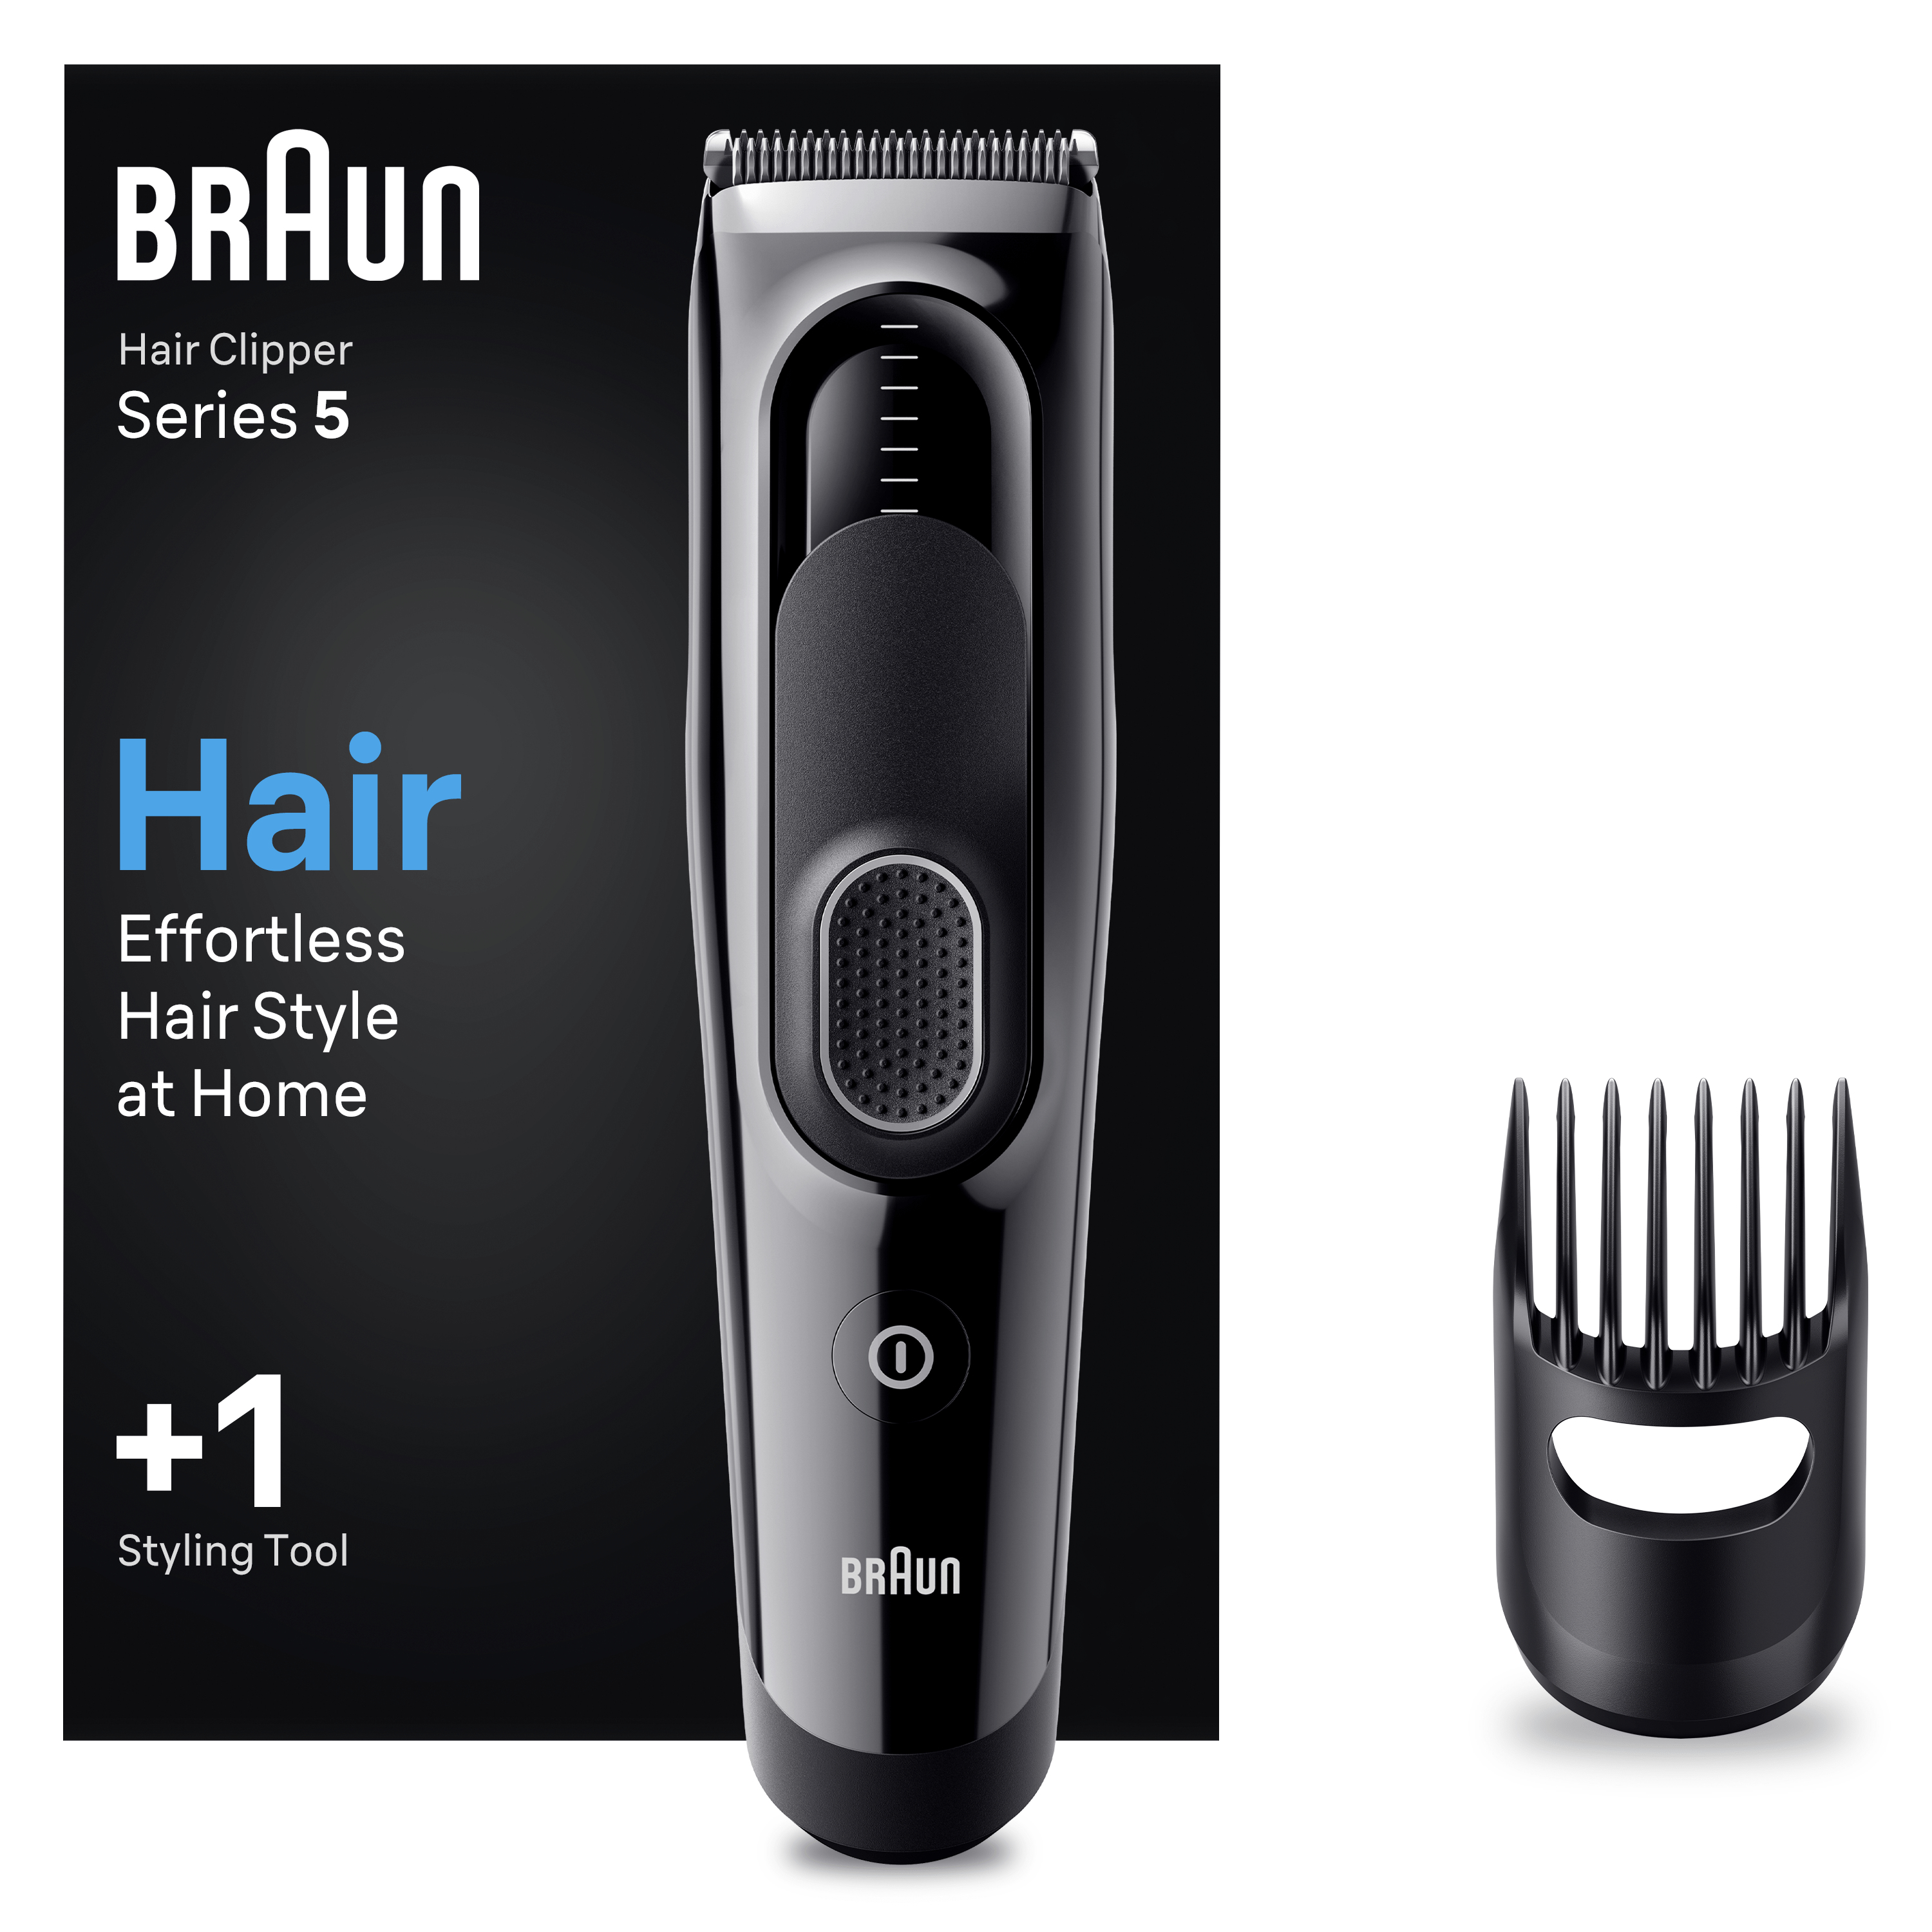 Haarschneider HairClipper - HC5310 Braun